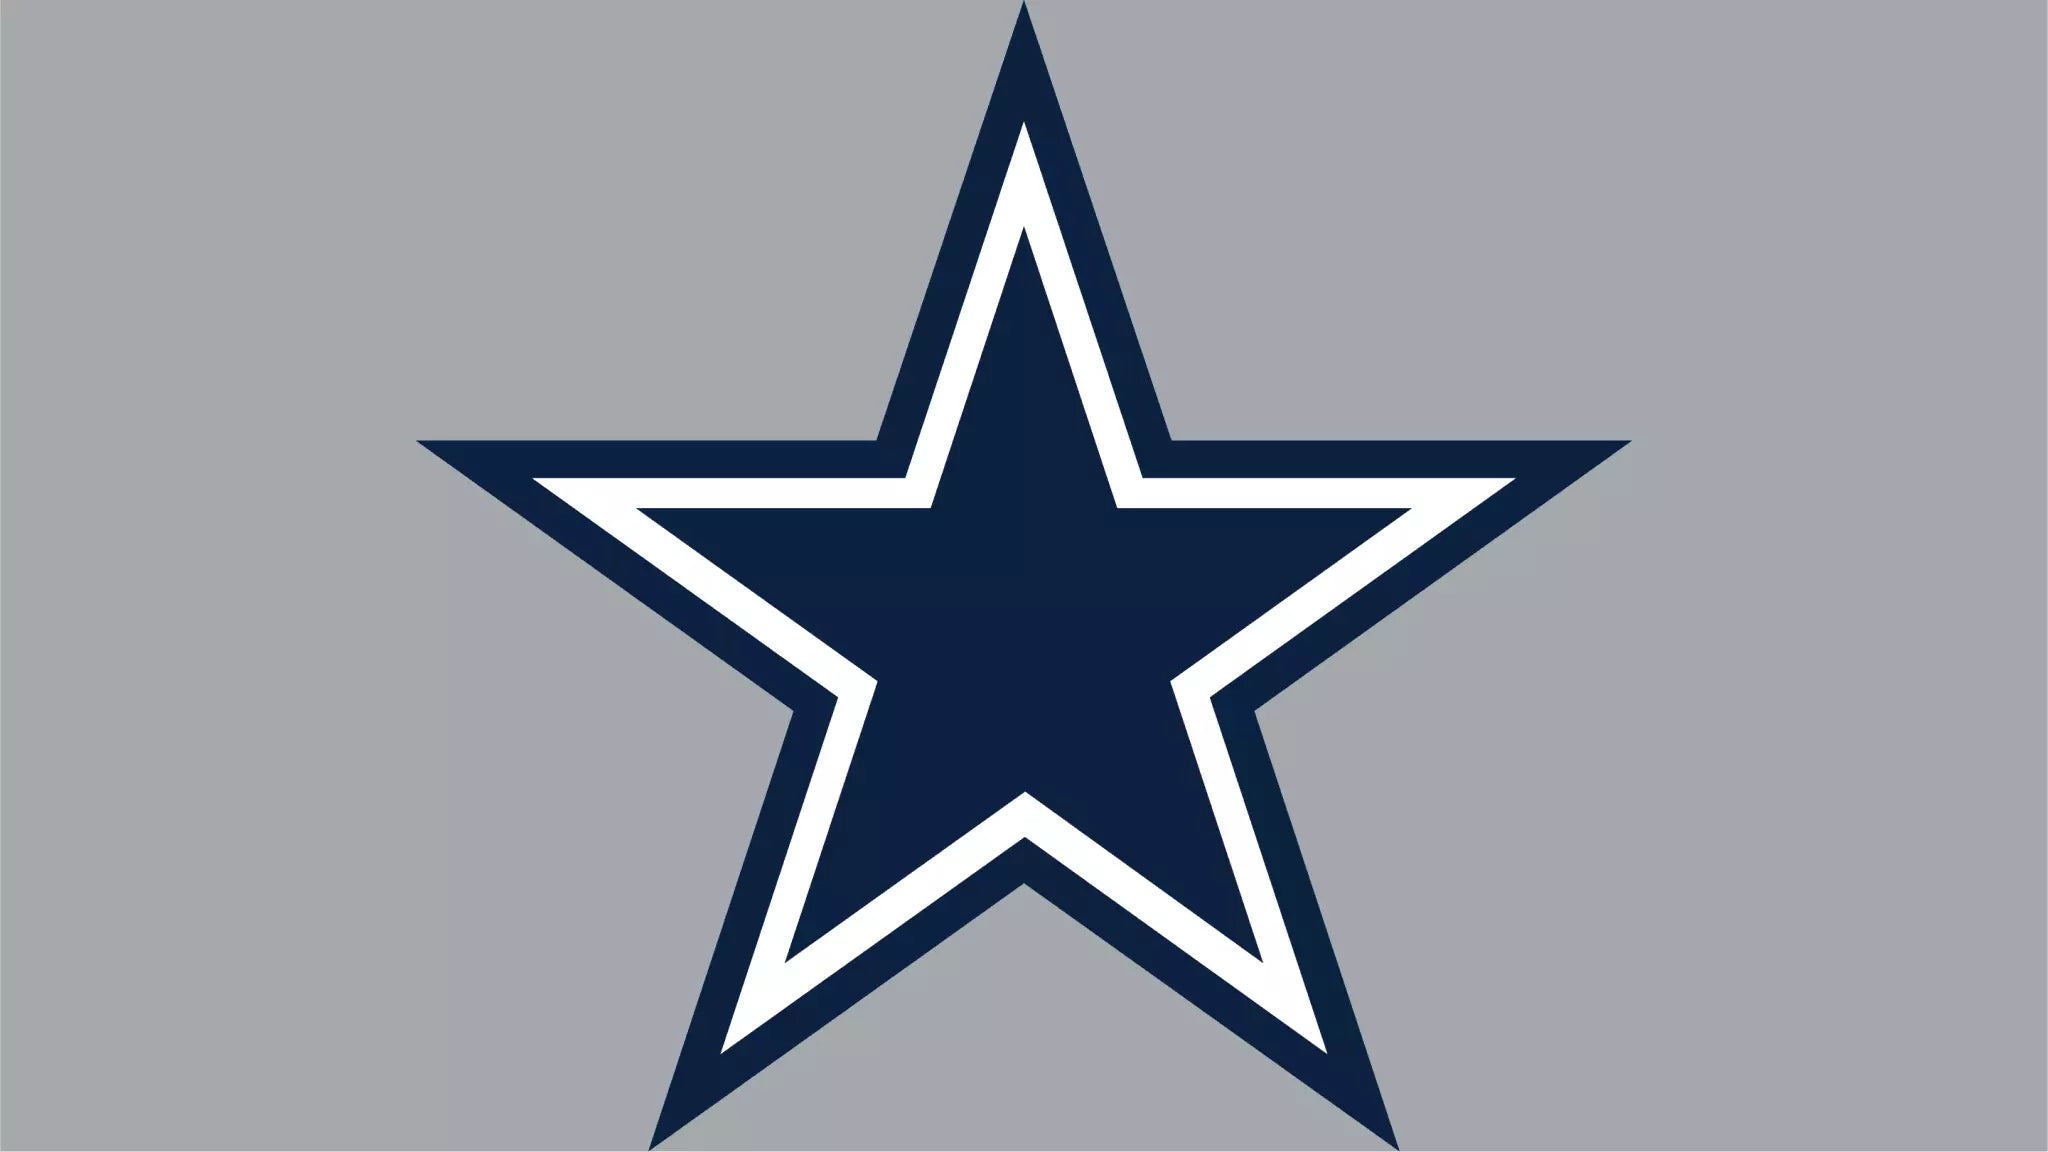 Logo Brands Dallas Cowboys Gameday Clear Crossbody Bag